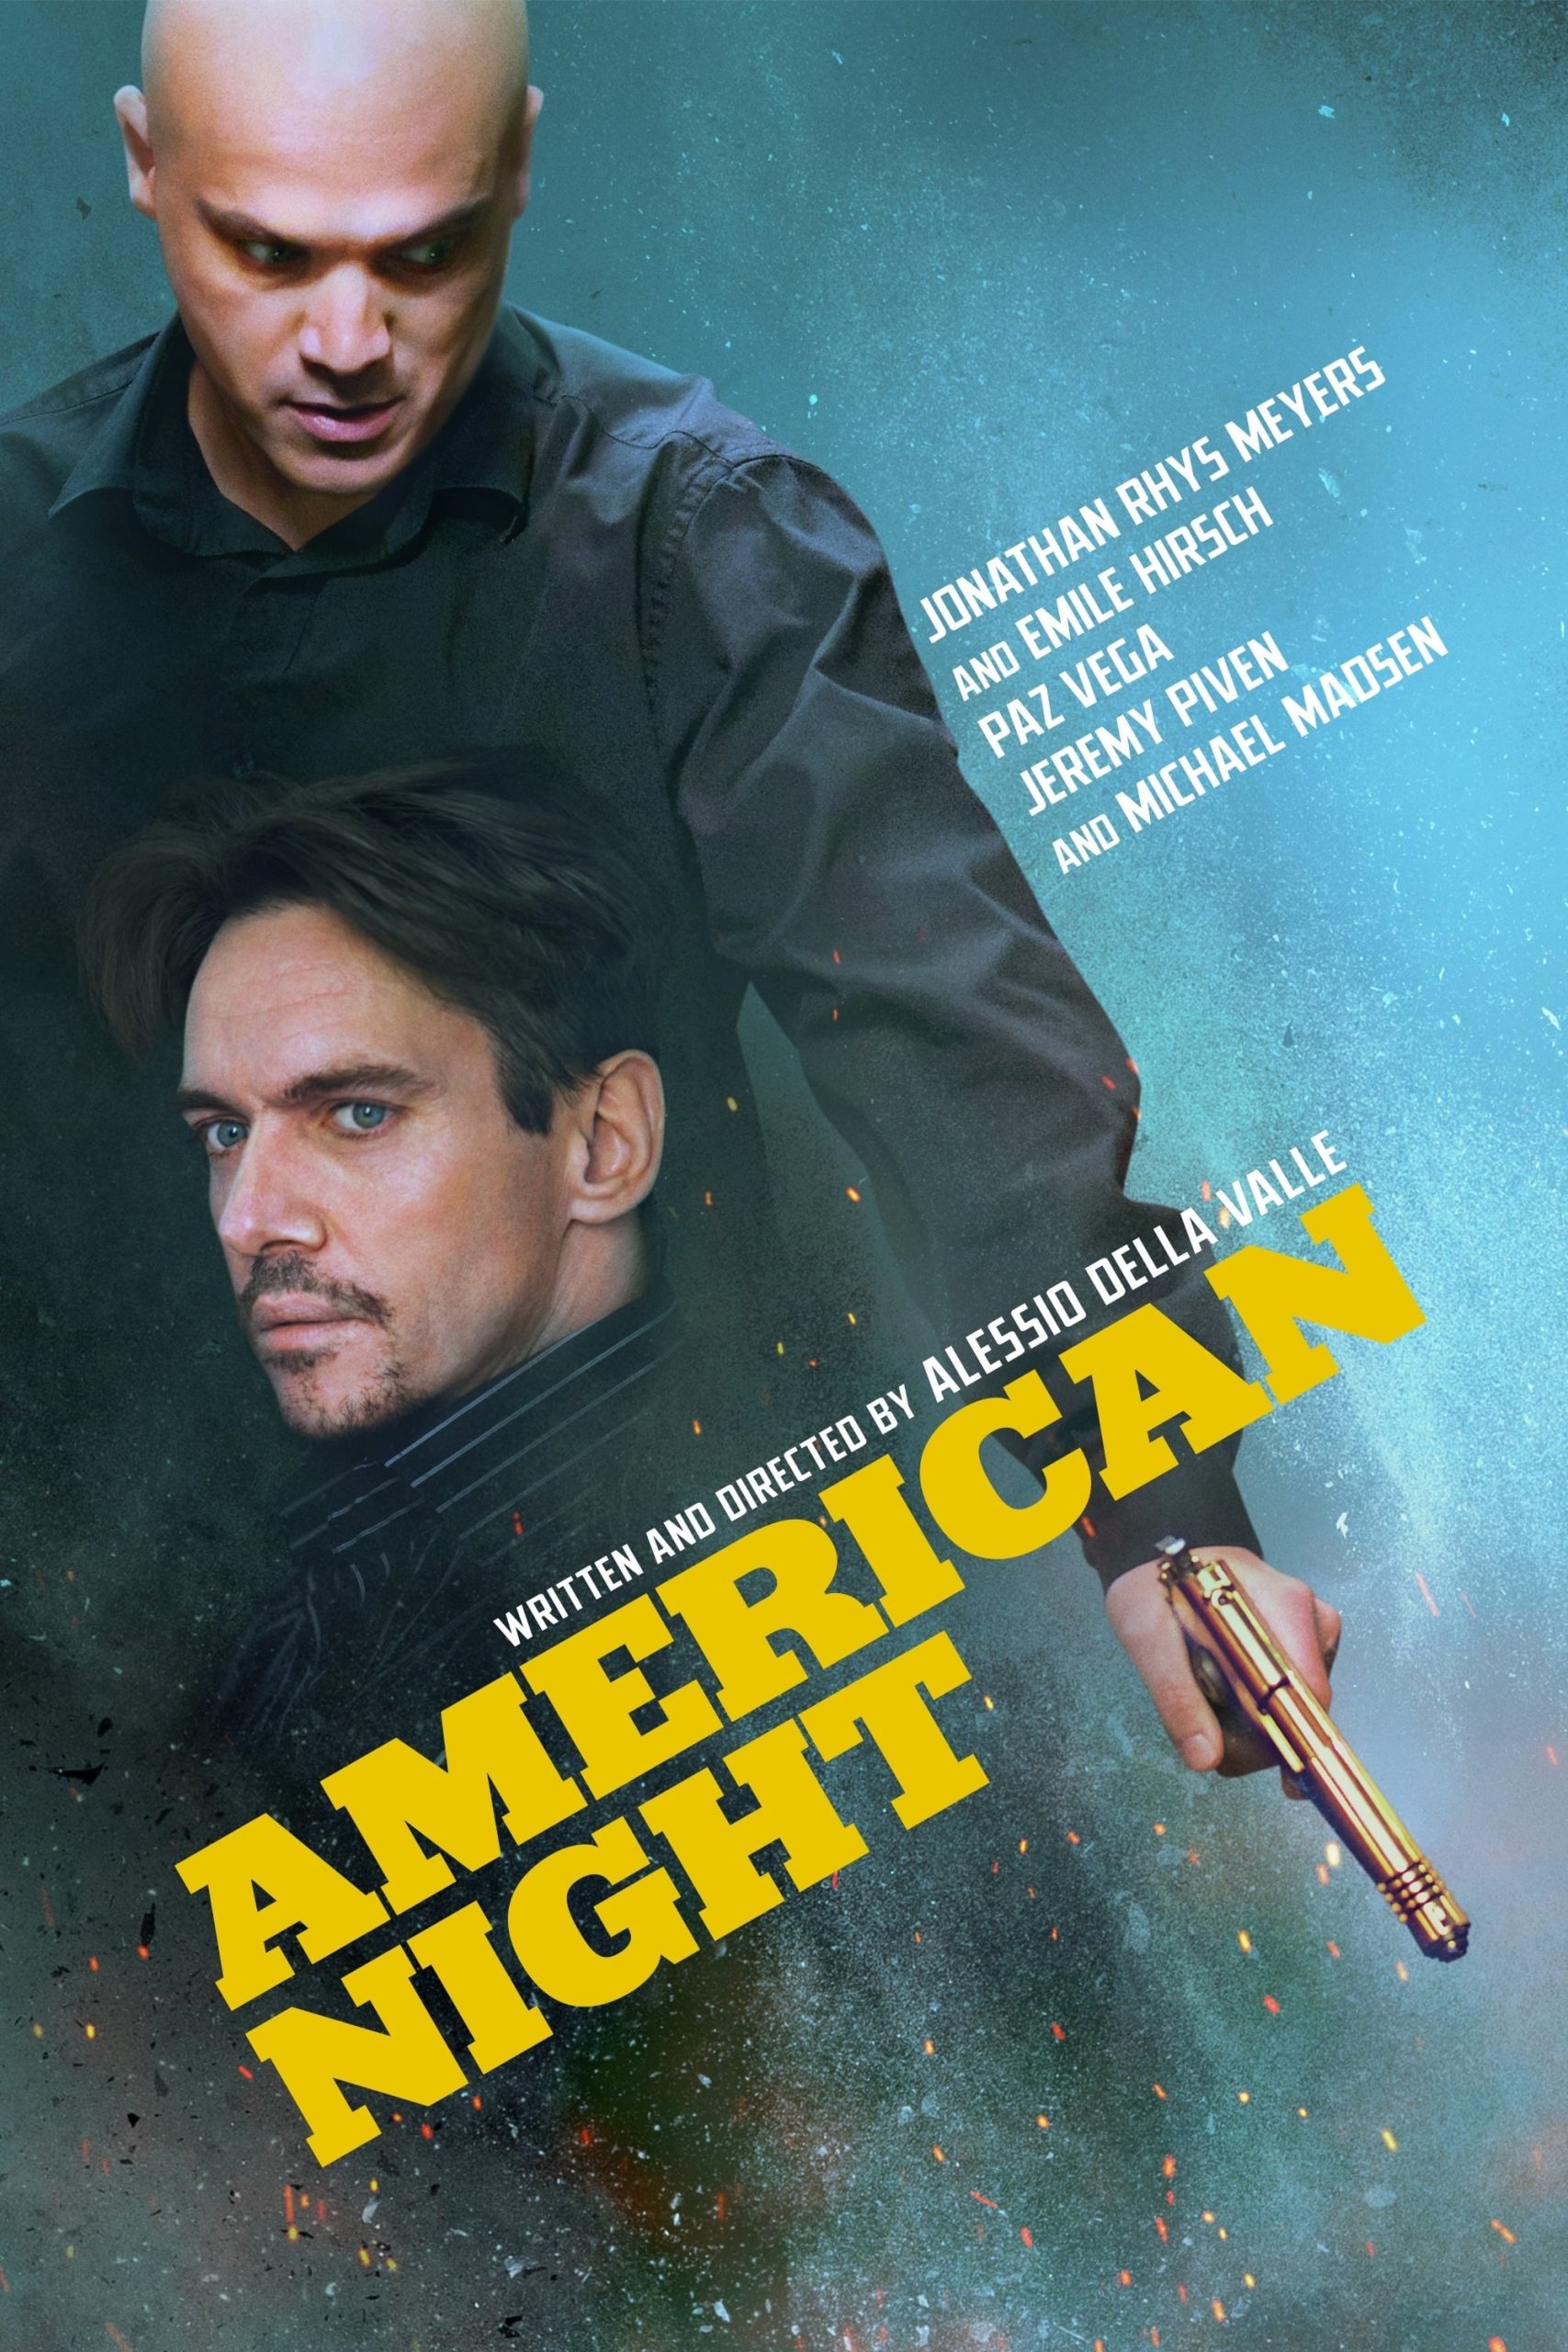 شب آمریکایی (American Night)